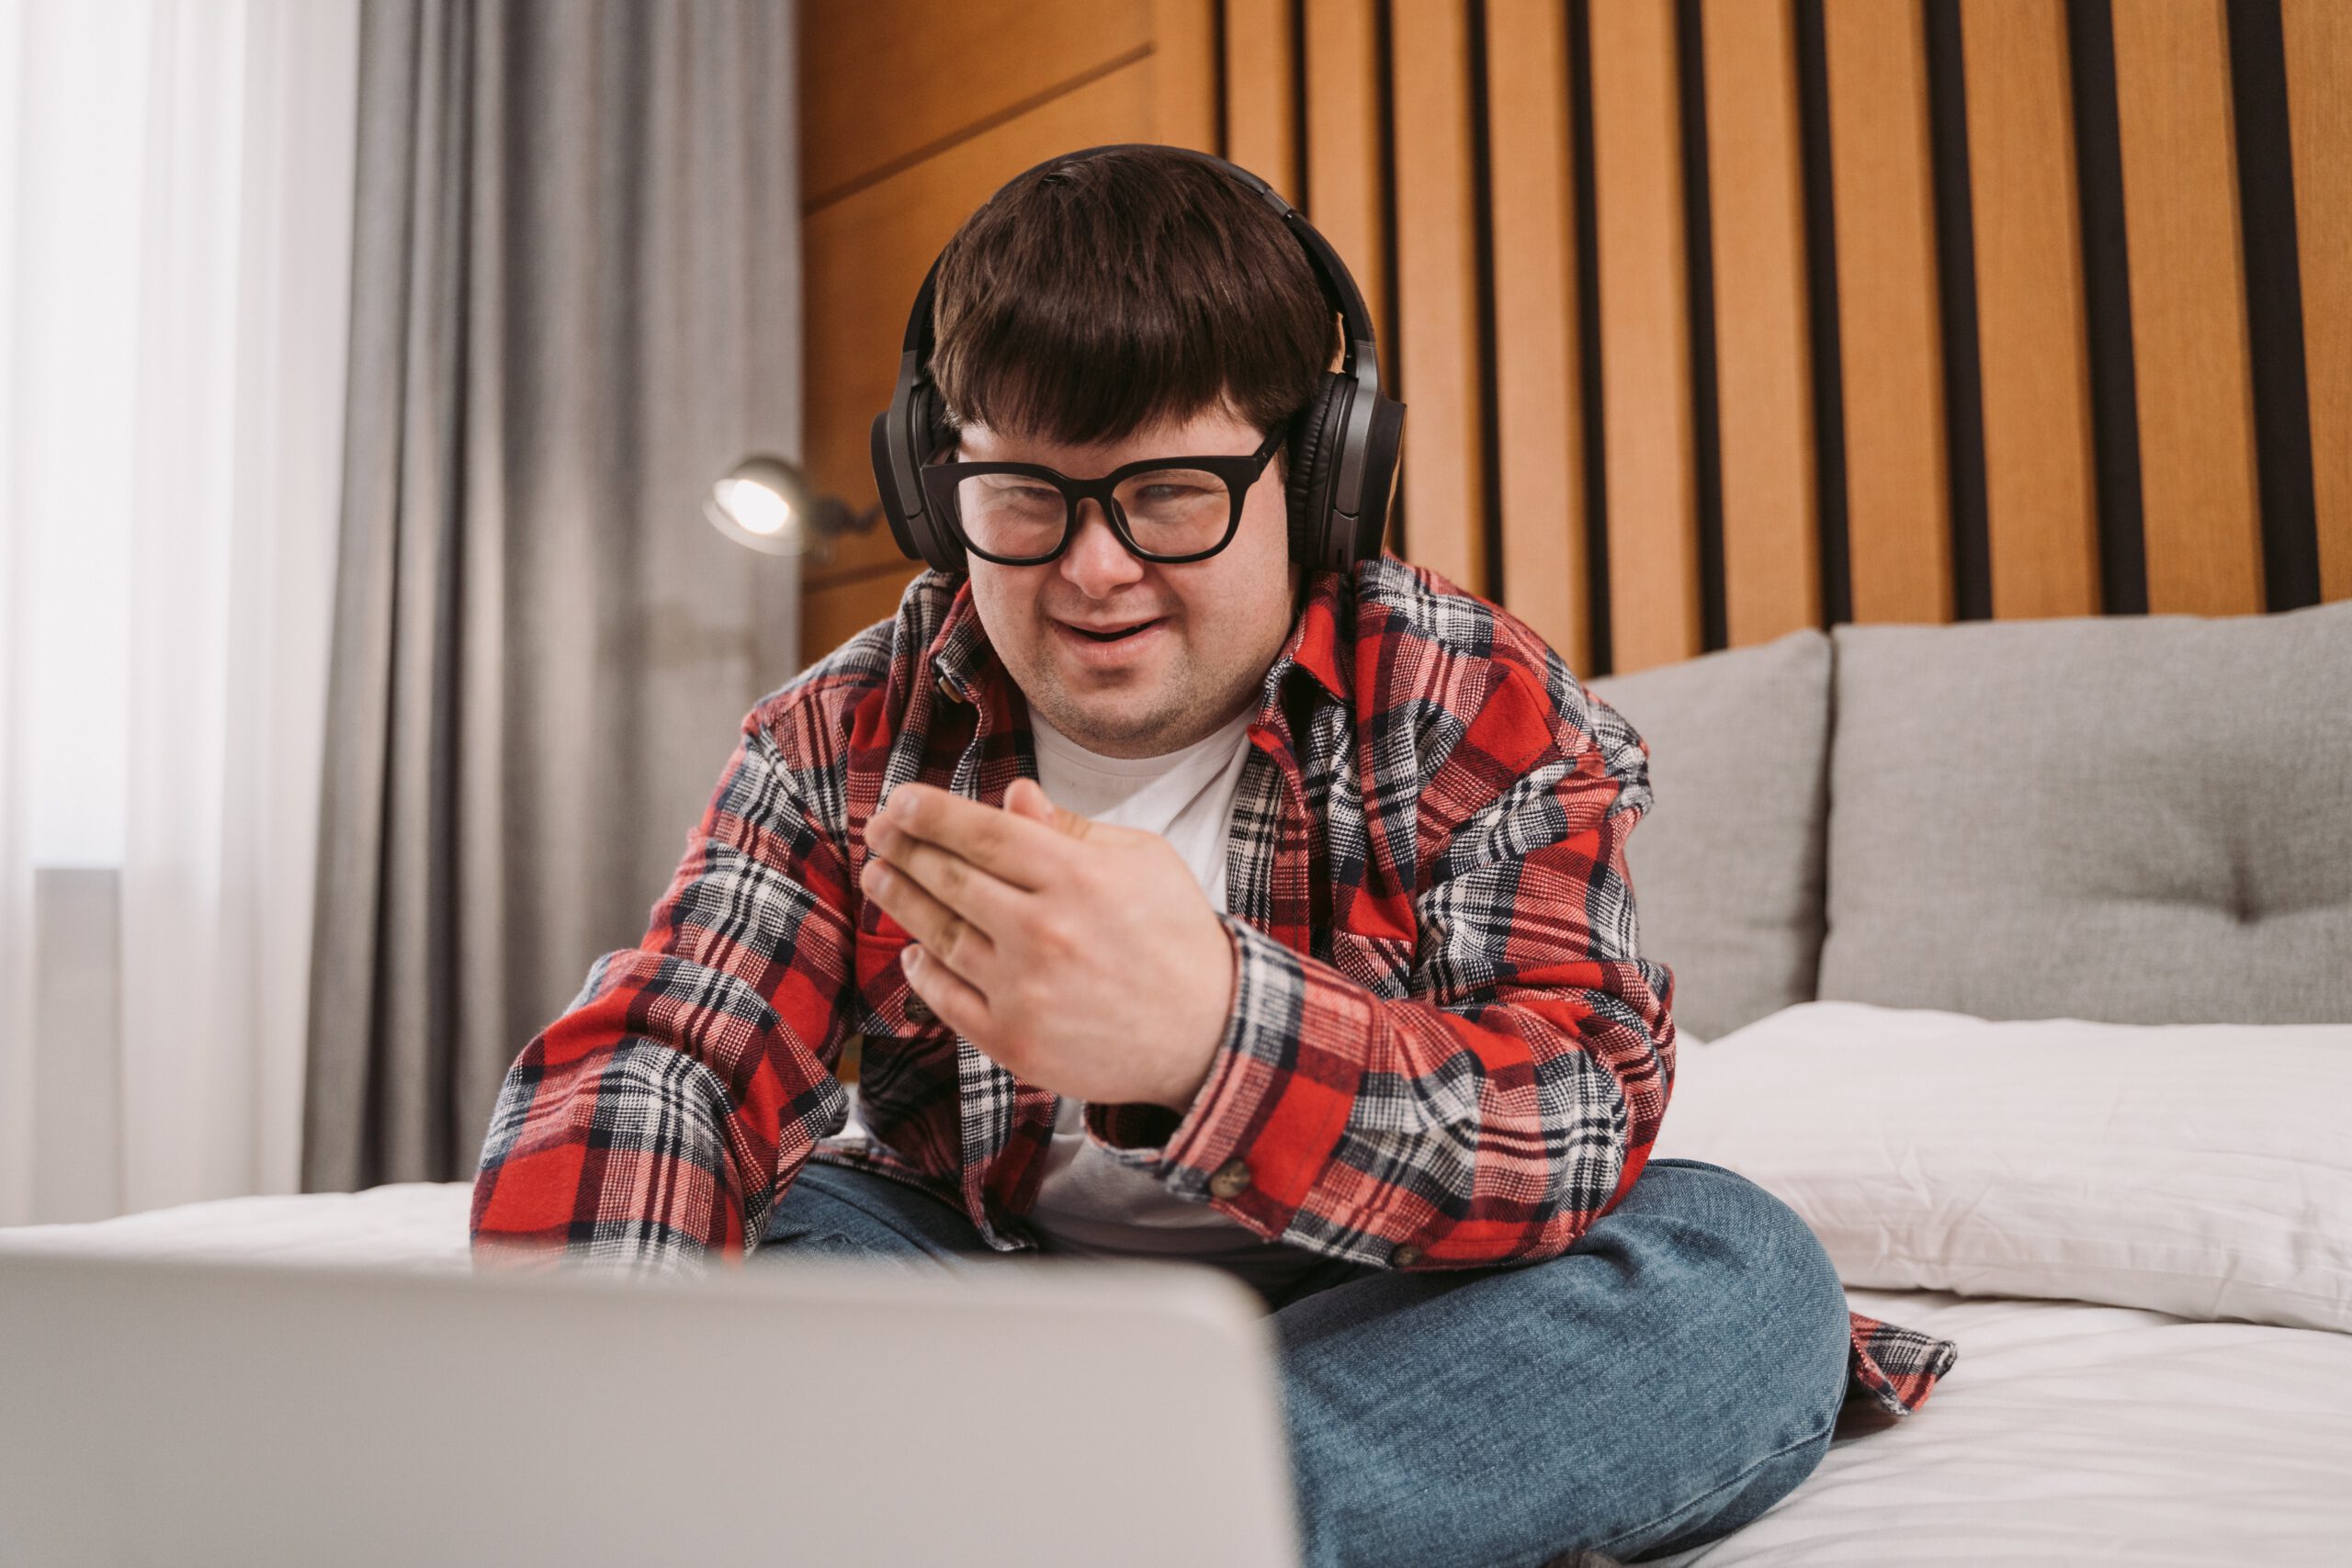 Mężczyzna z upośledzeniem umysłowym siedzący na łóżku z laptopem i słuchawkami na uszach